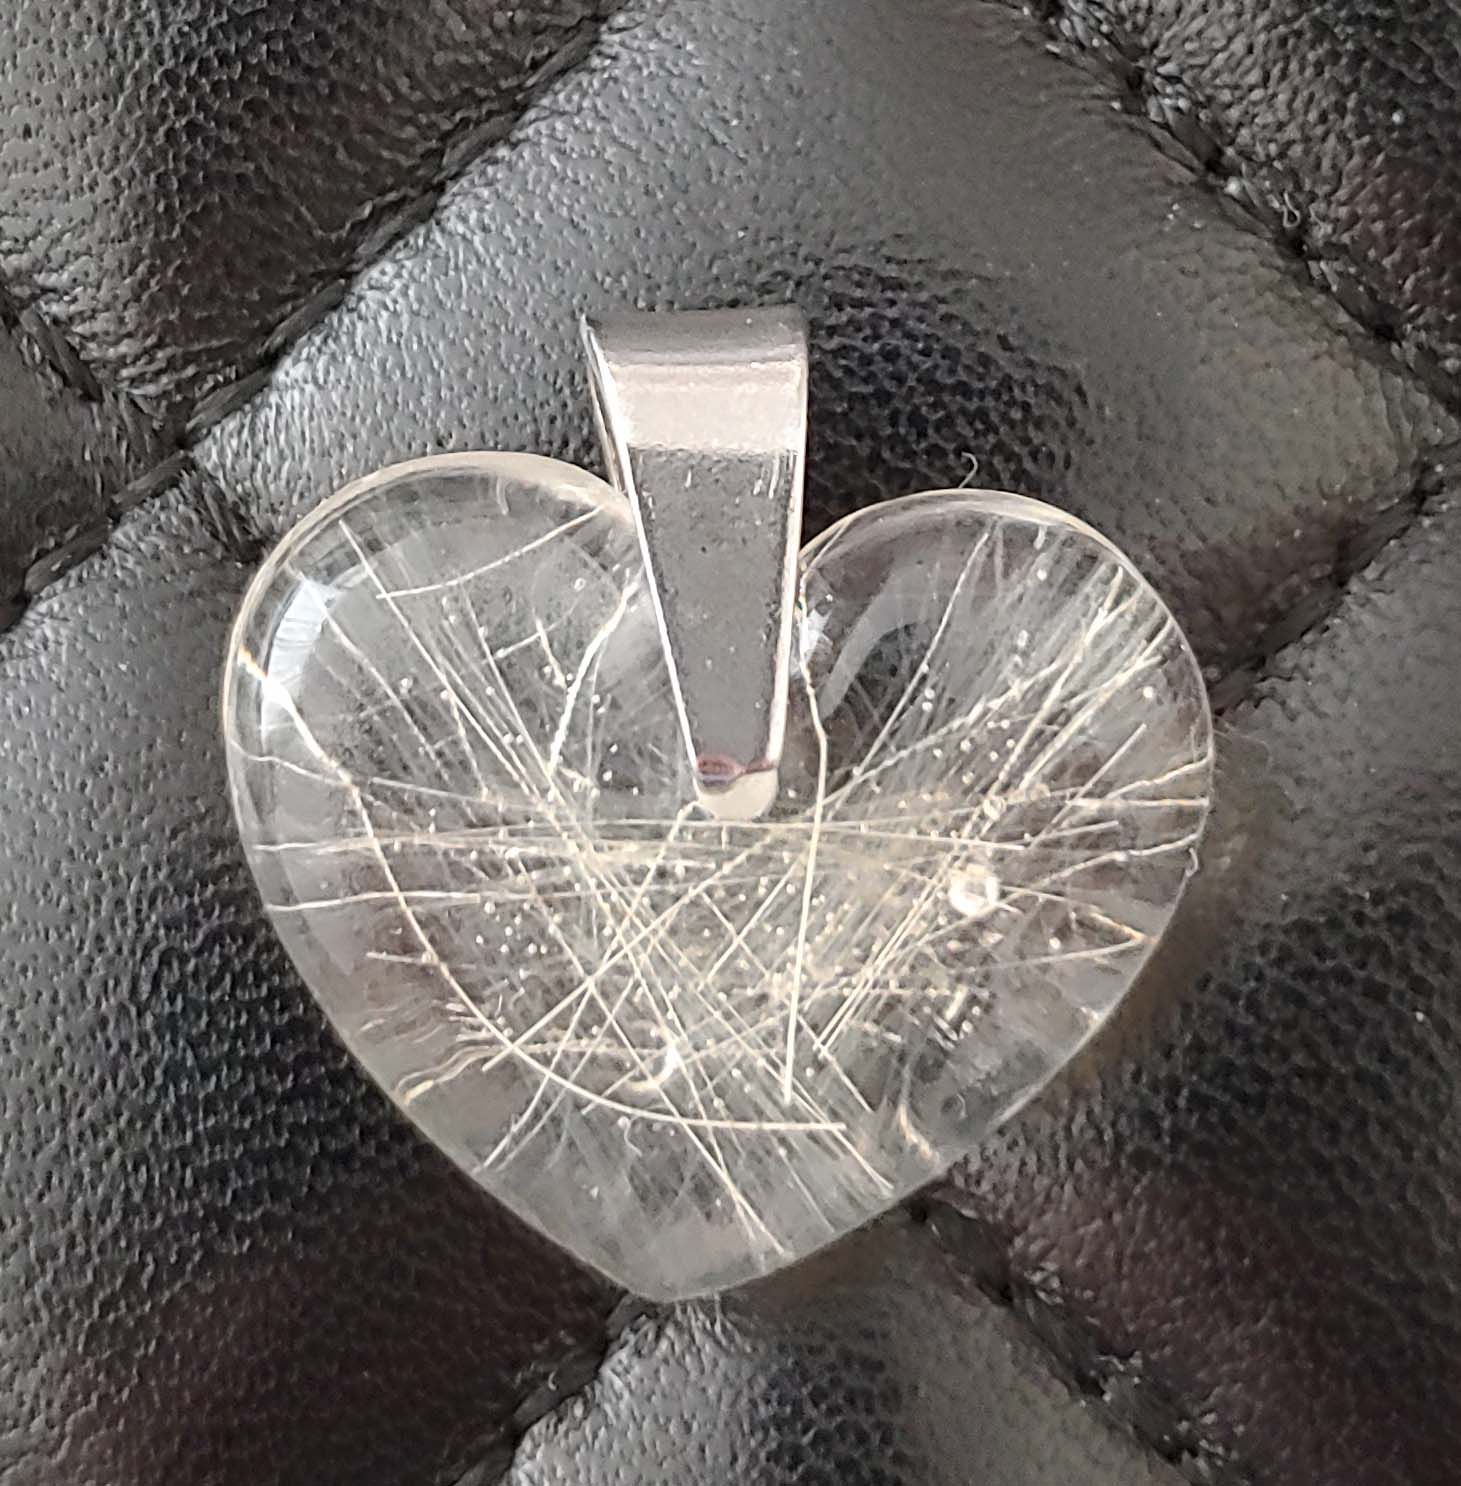 Maanhaar van een schimmeltje in een epoxy hart